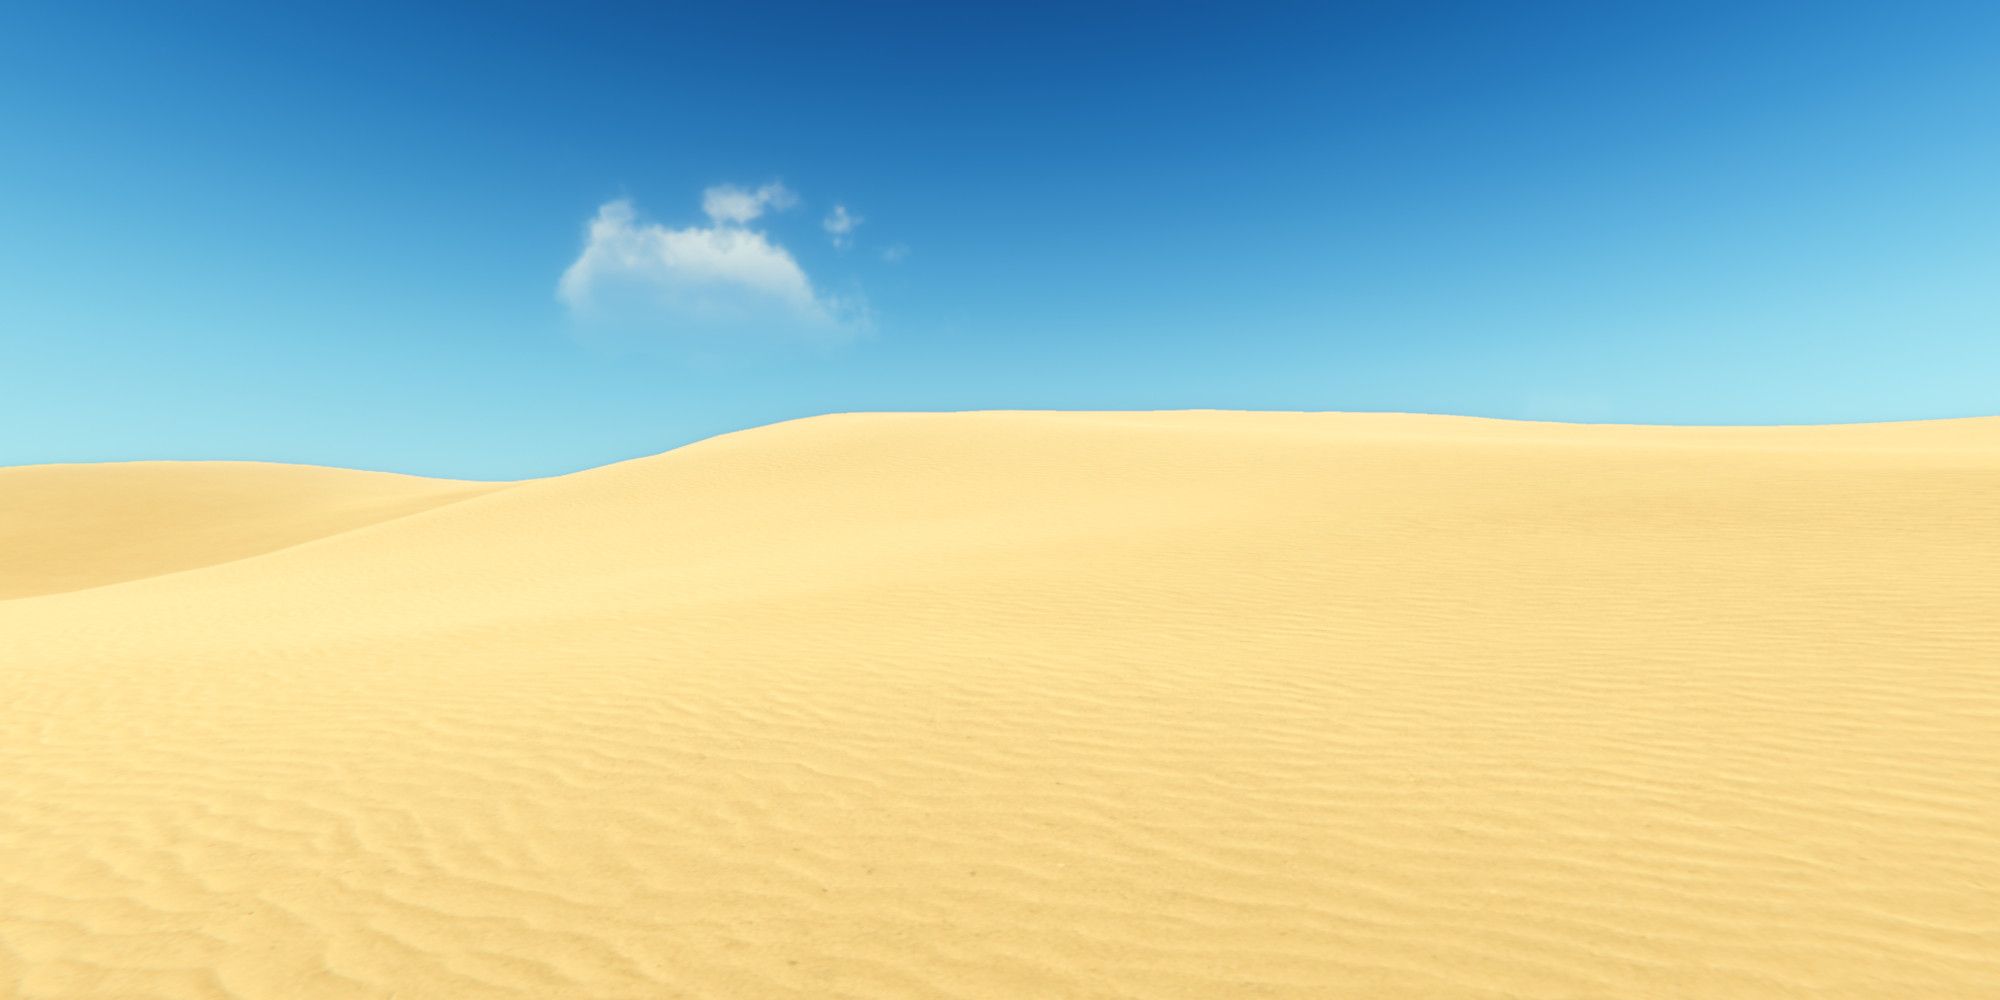 starsand desert dunes and blue sky